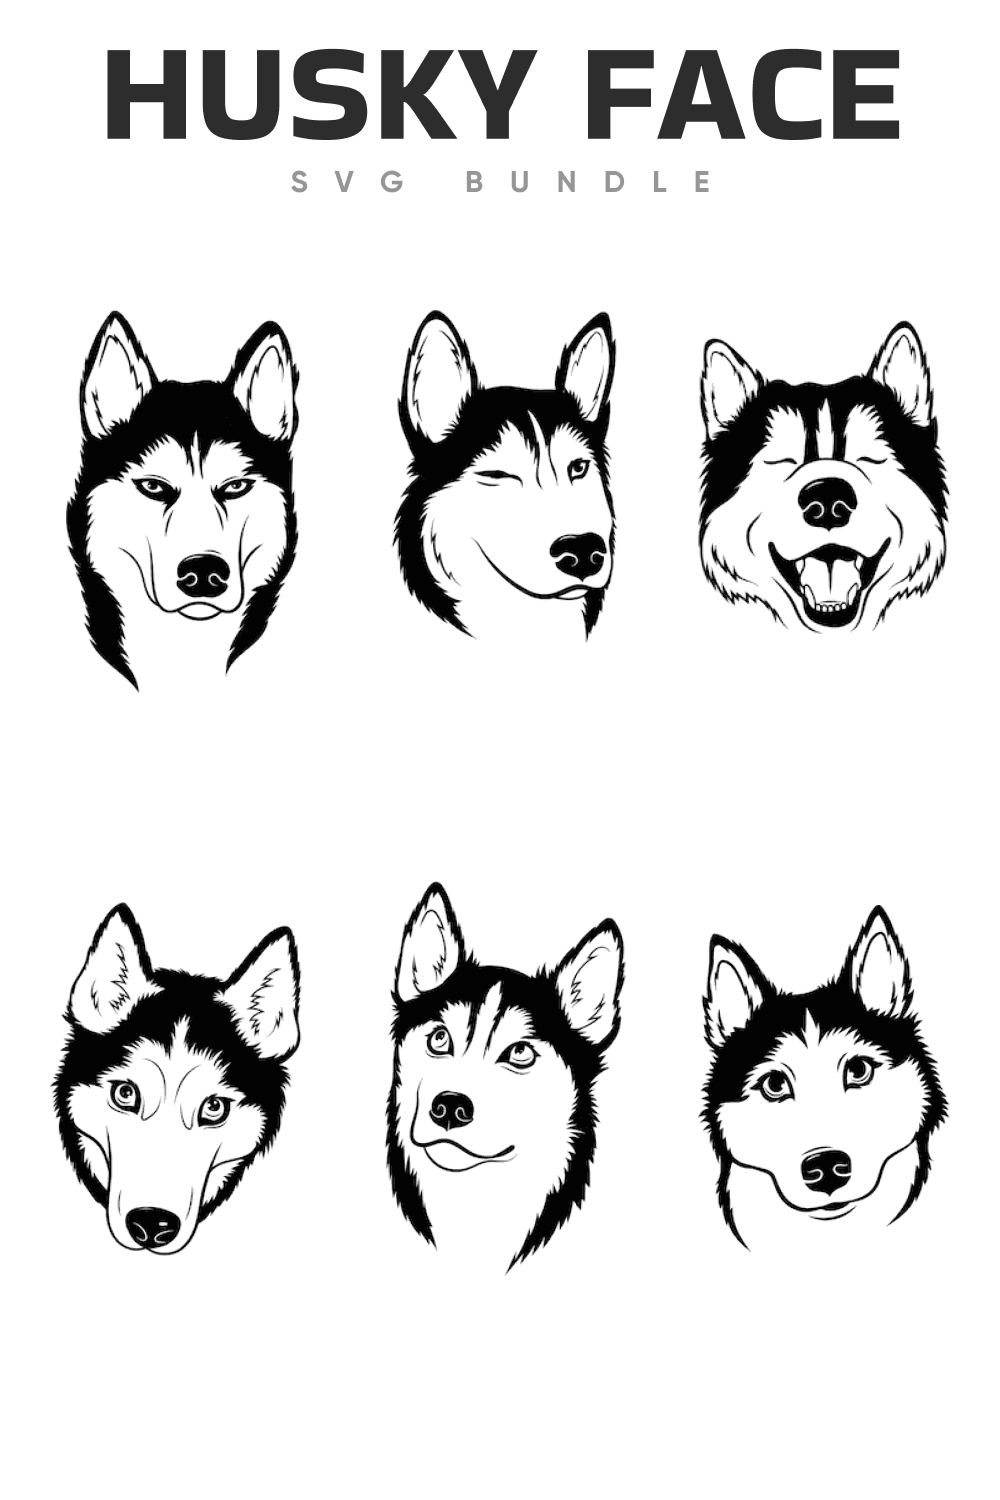 Various of husky face.